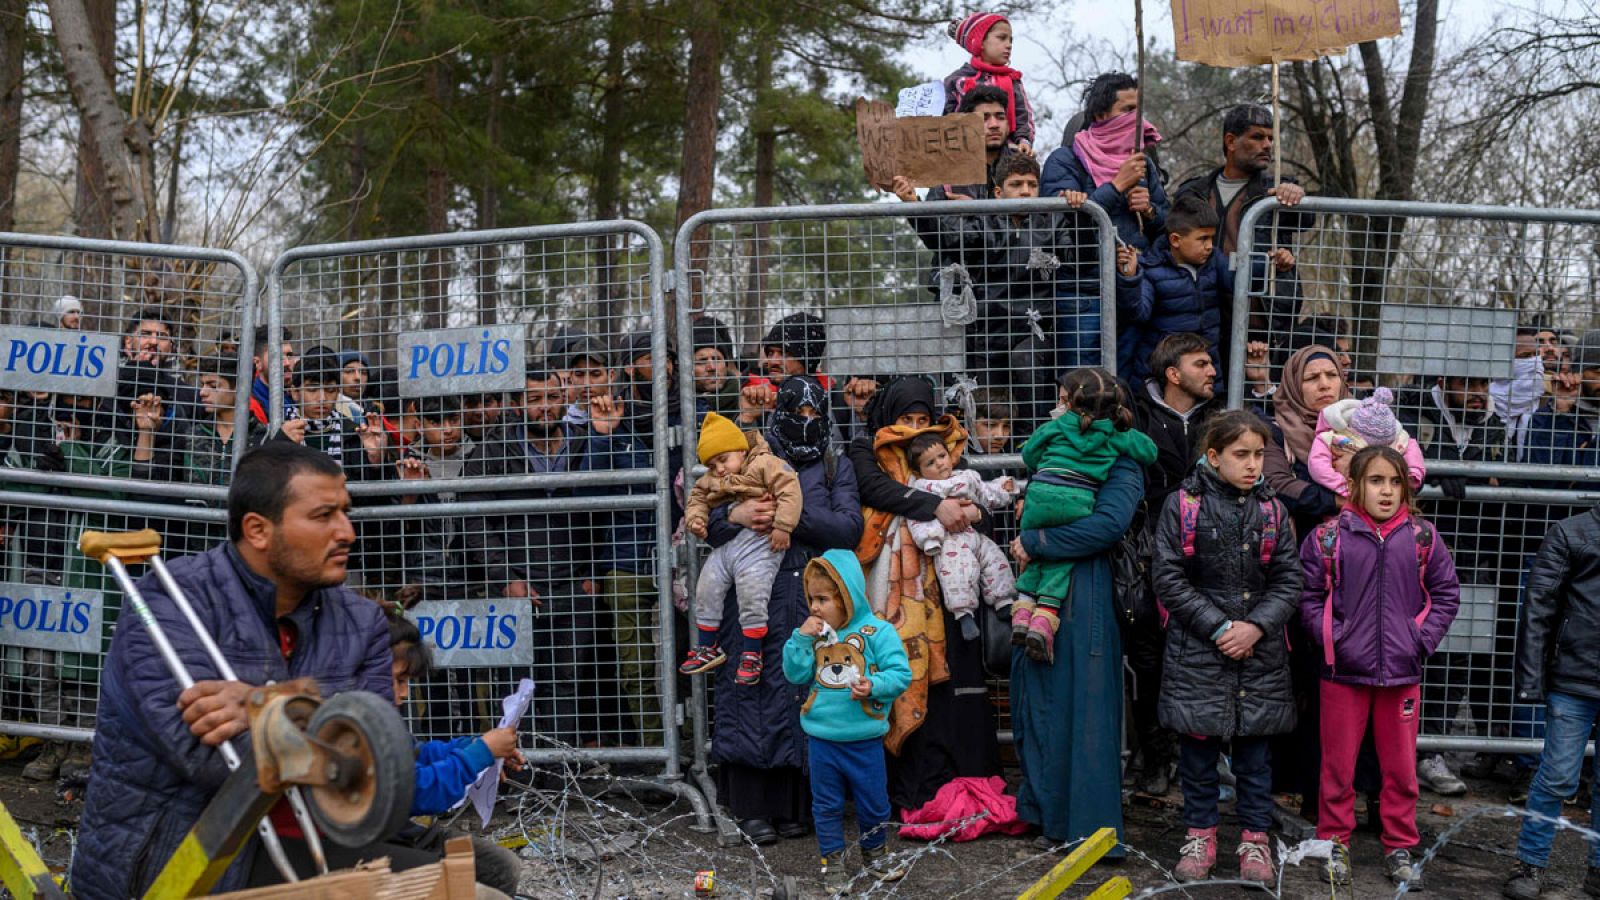 Inmigración | Aumenta la tensión en la frontera entre Grecia y Turquía por la llegada de migrantes